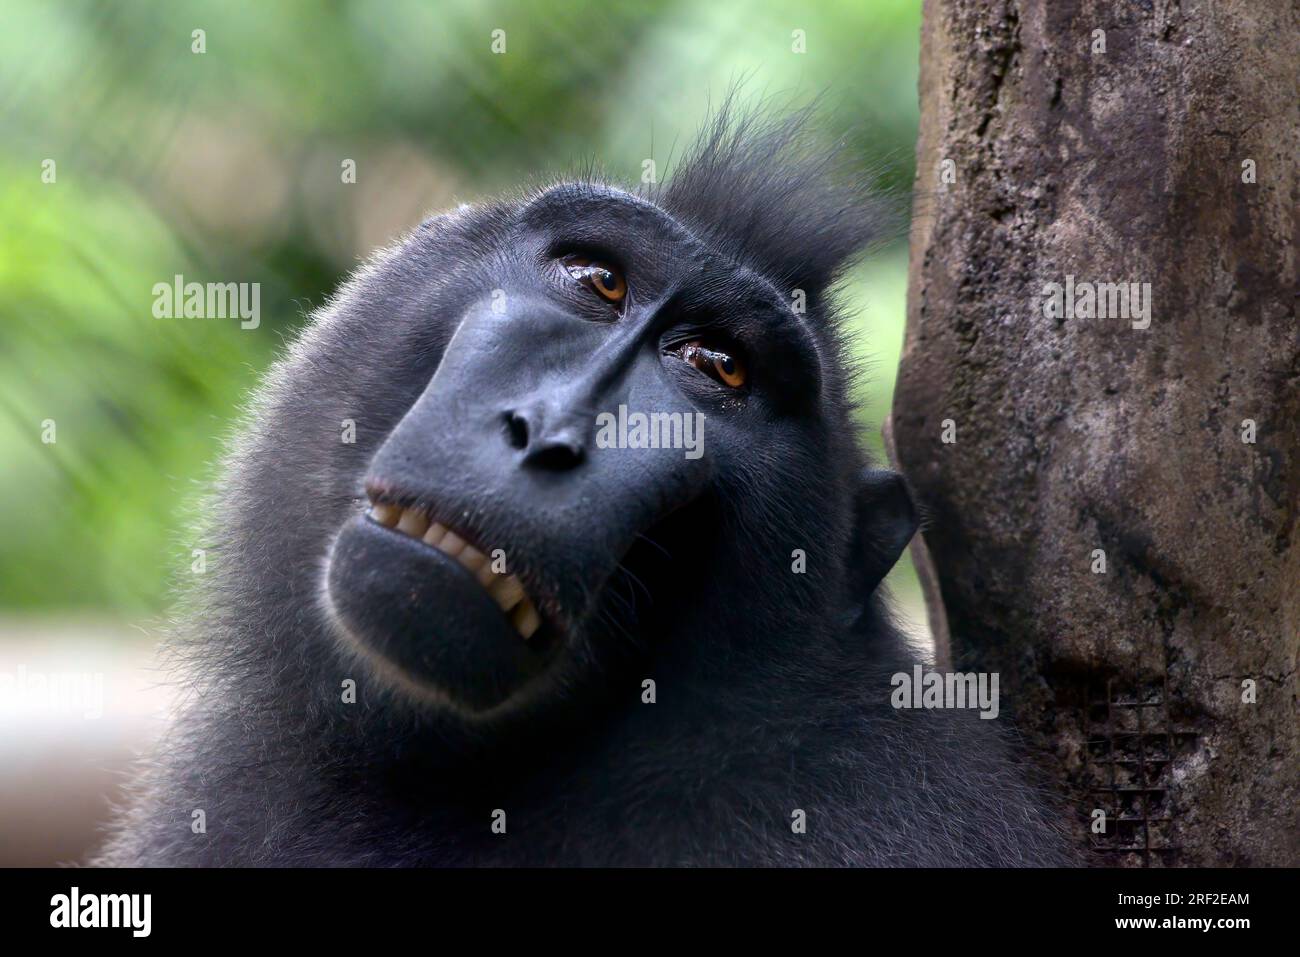 Porträt eines Yaki-Affen (macaca nigra) auf dem Gehege Stockfoto